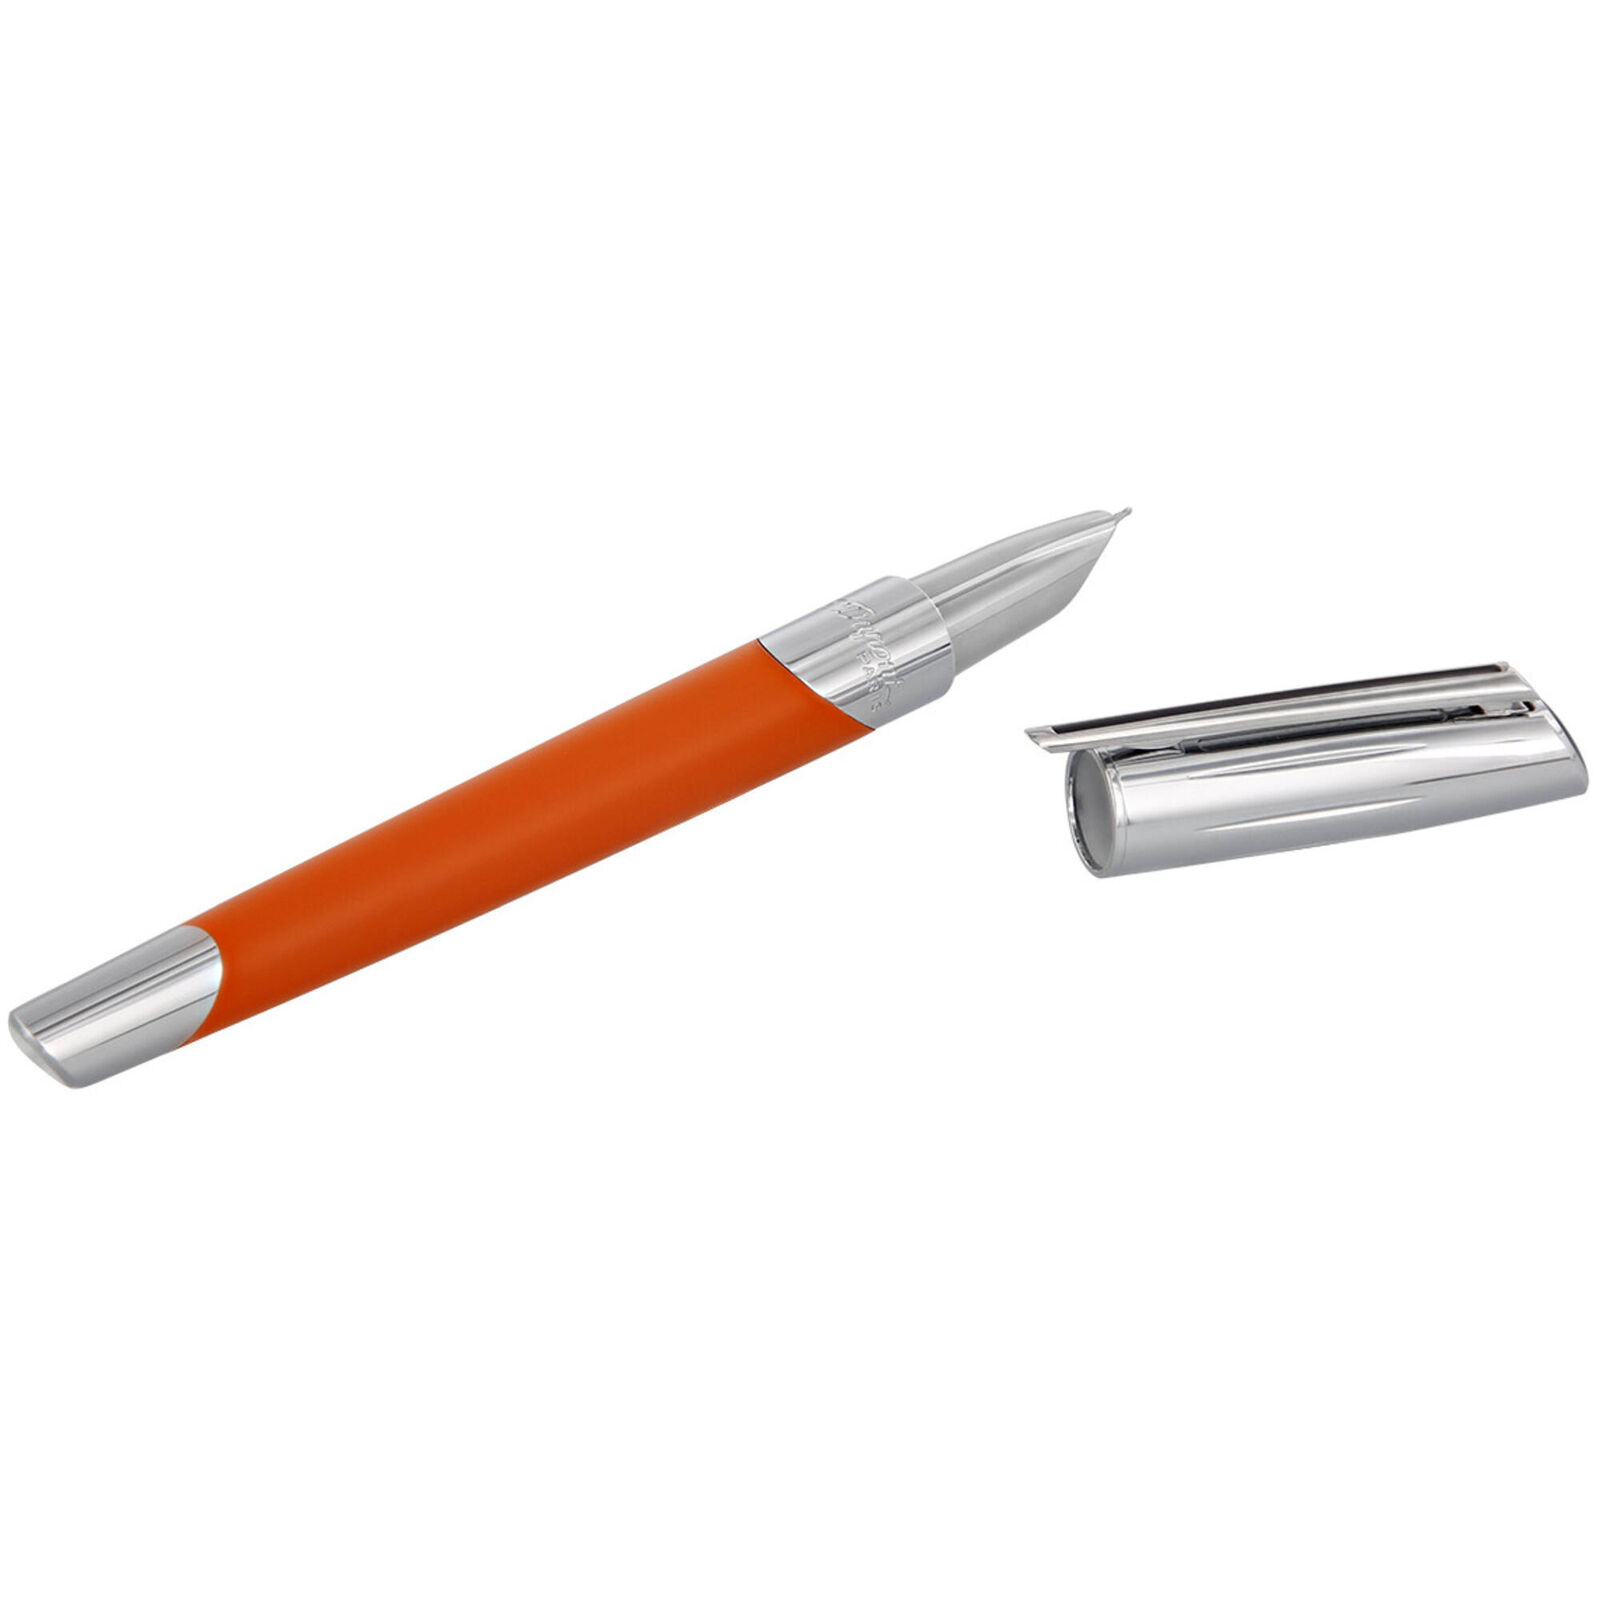 S.T. Dupont Fountain Pen Defi Millenium Matte Orange and Chrome, Medium DP400737